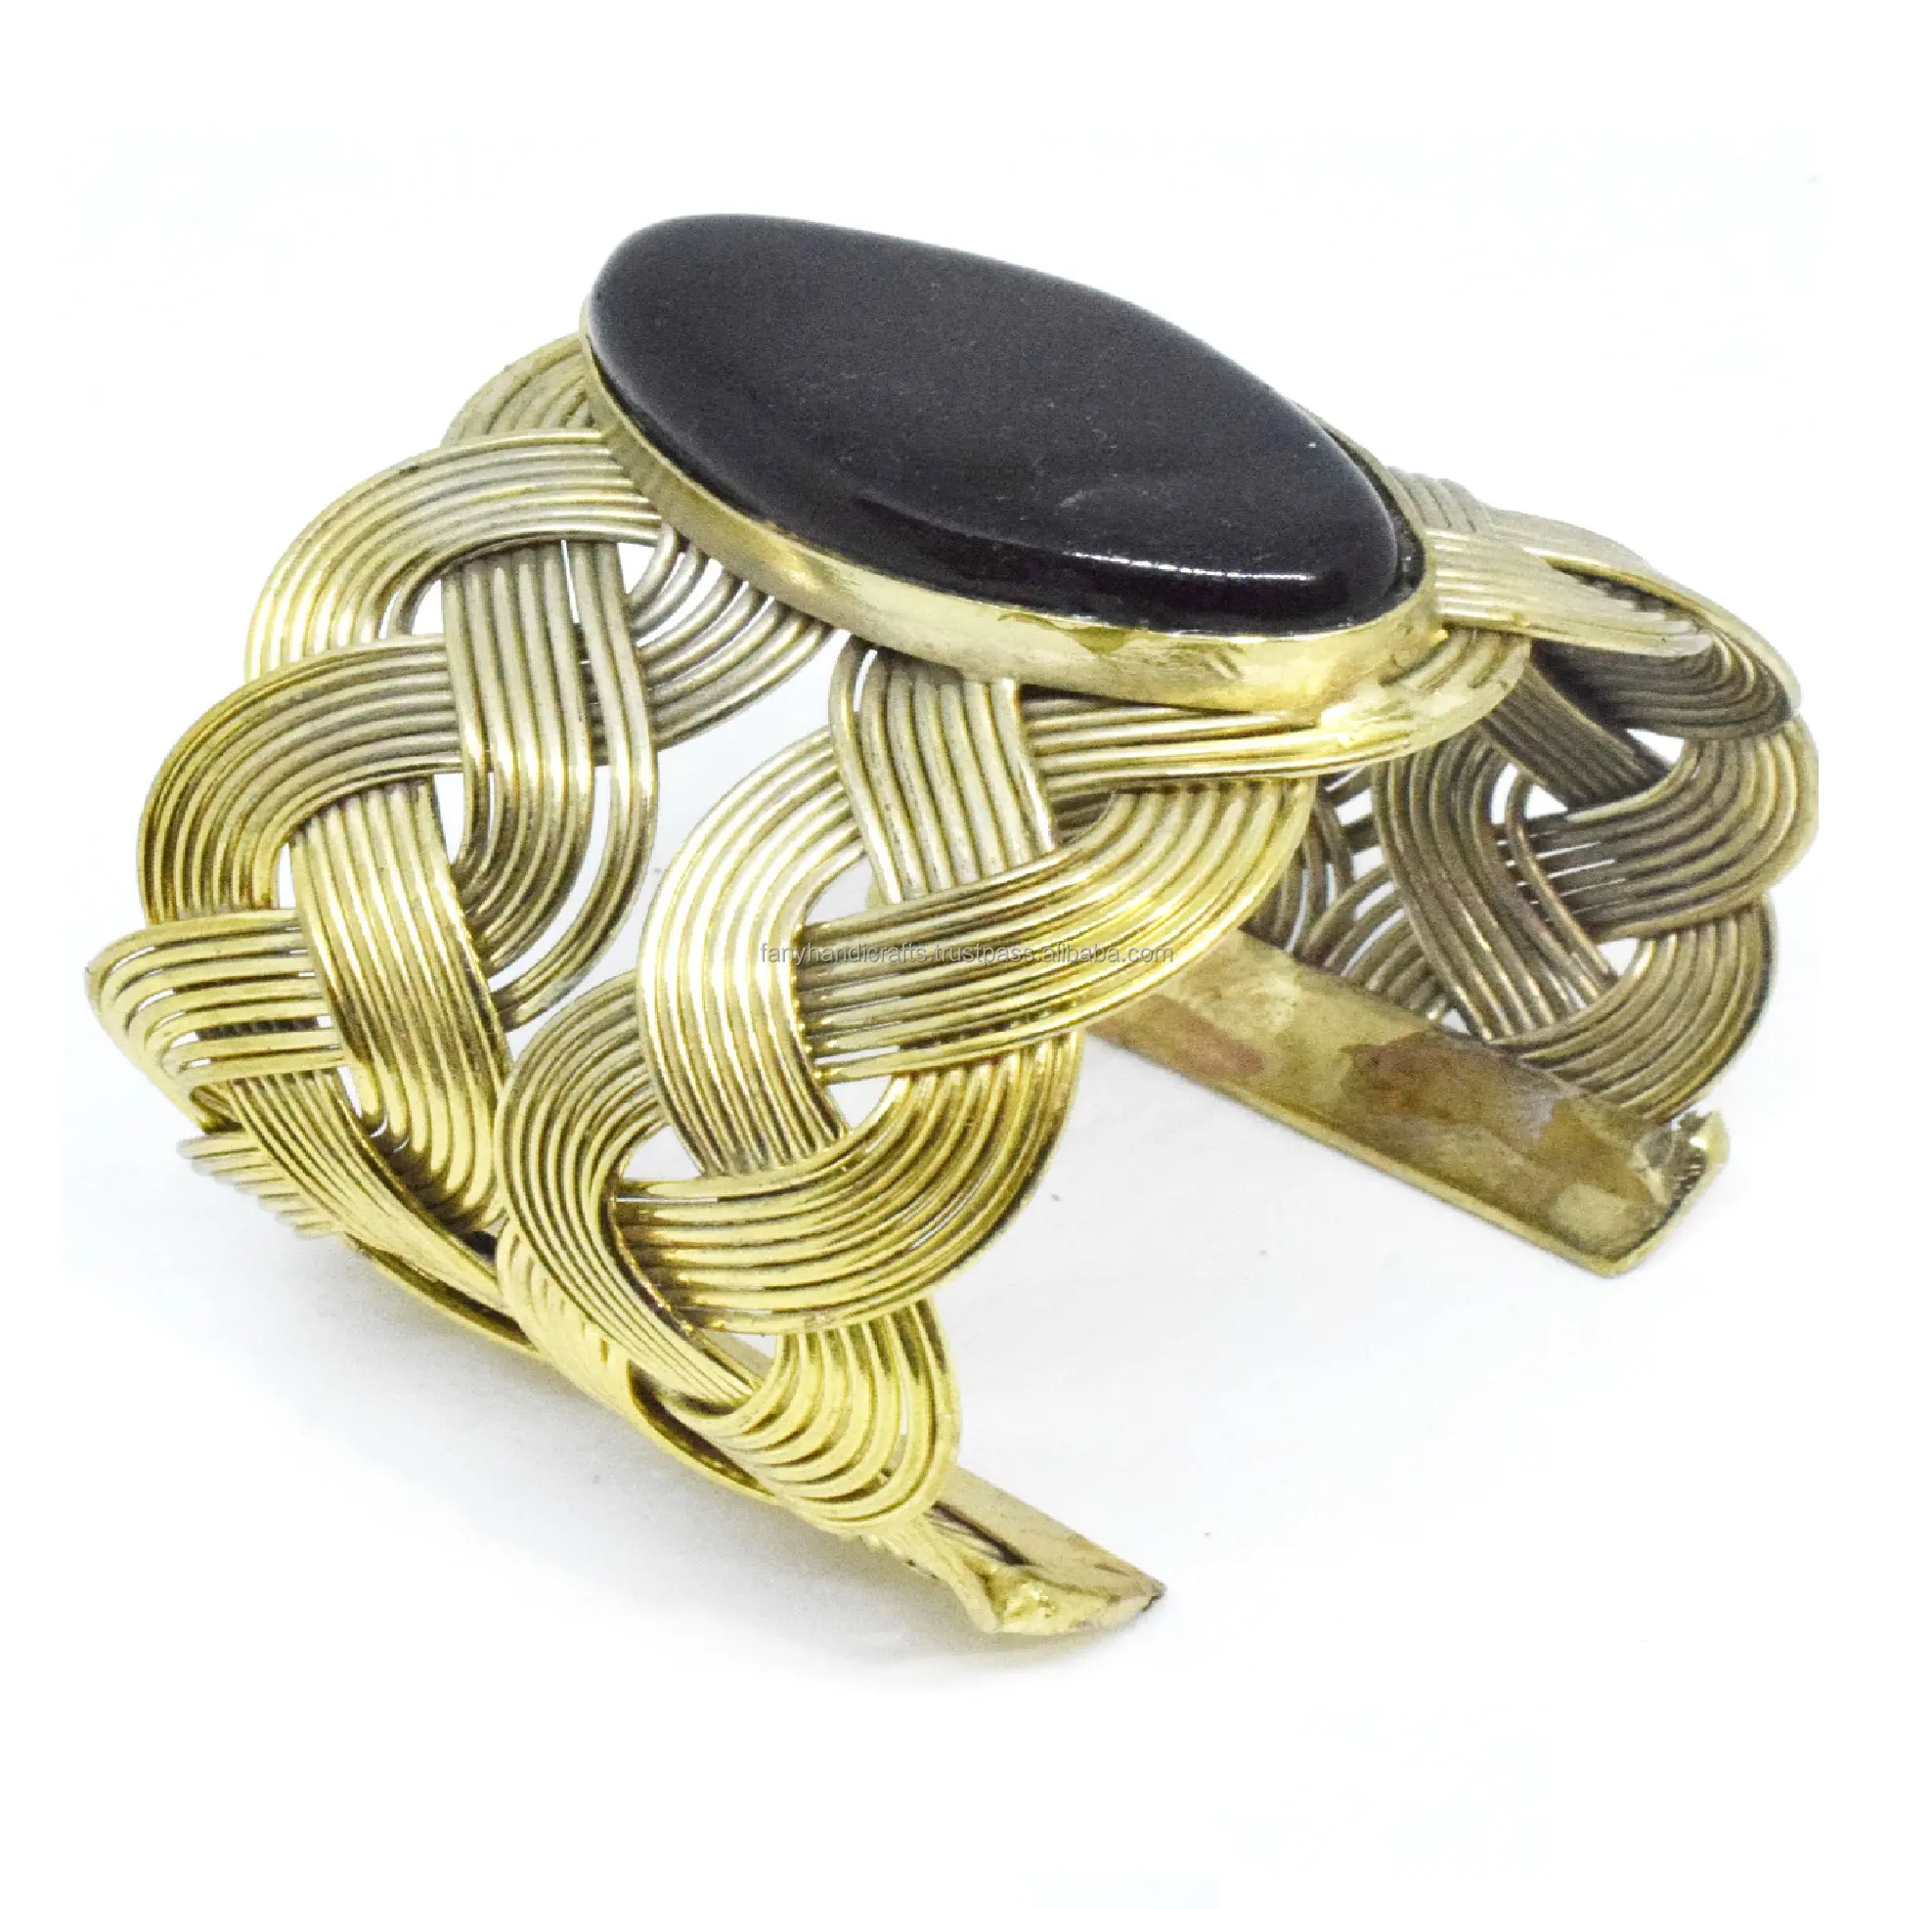 Kwaliteit Handwerk Verguld & Messing Metalen Draad Manchet Armband Fabrikant Van India Cadeau Voor Vrouw Man Meisje